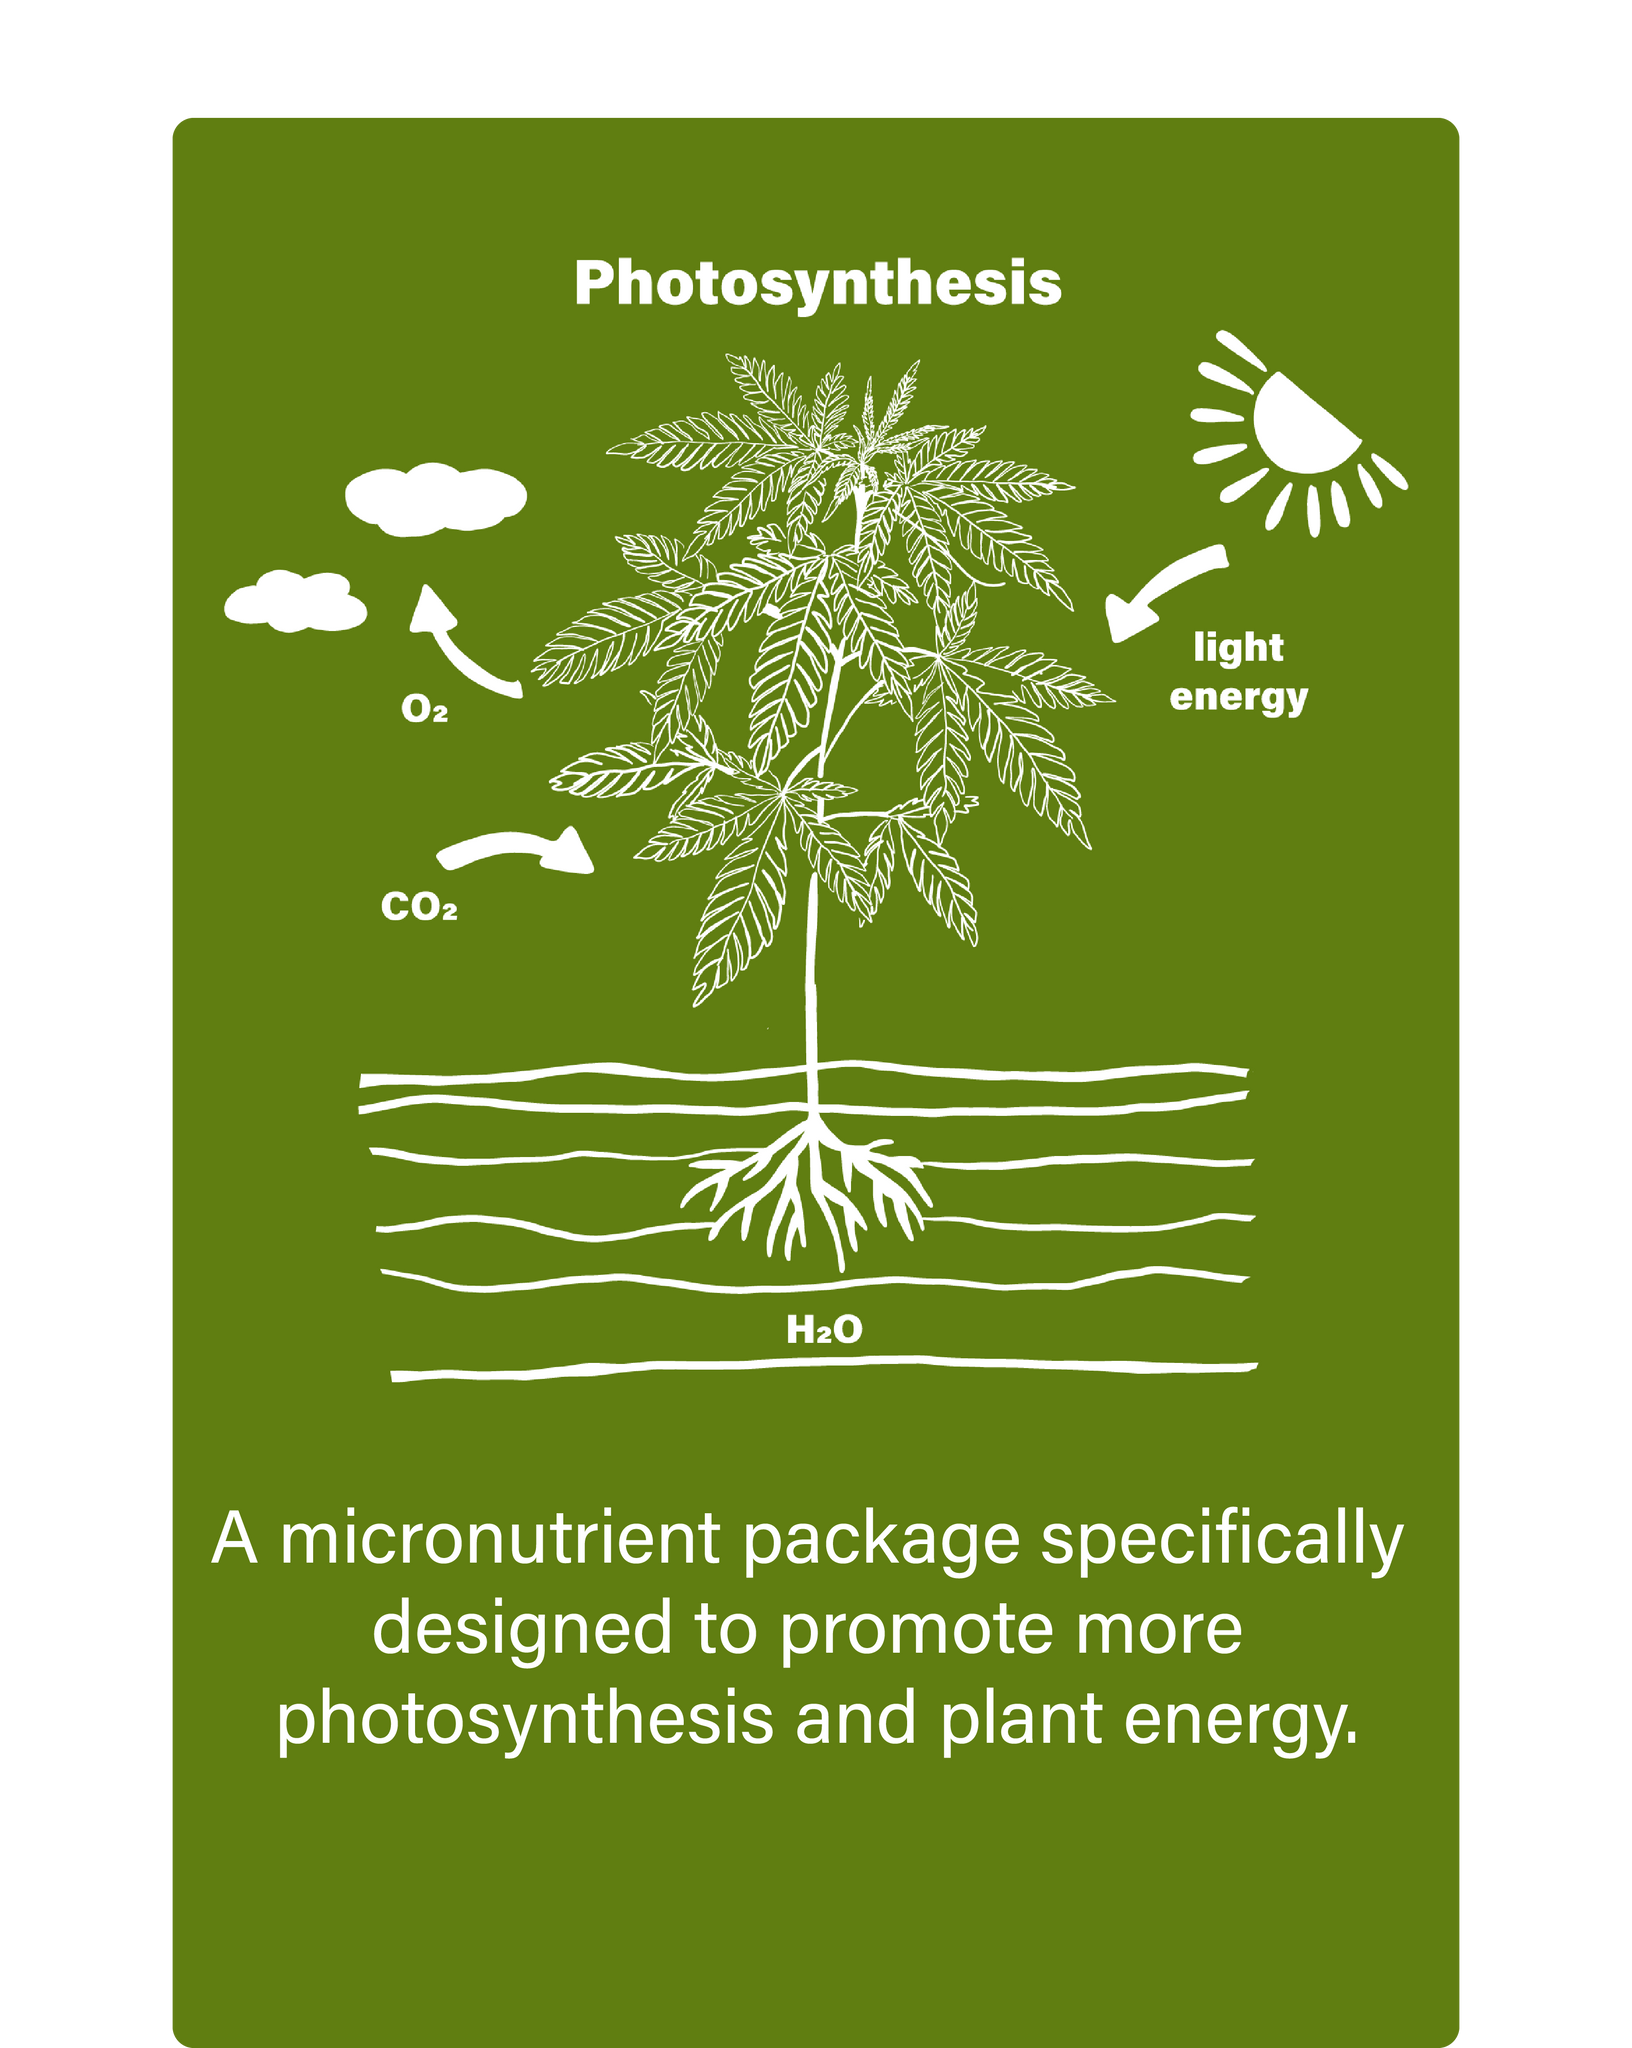 ibex-nutrition-plant-nutrients-fertilizer-photosynthesis-description